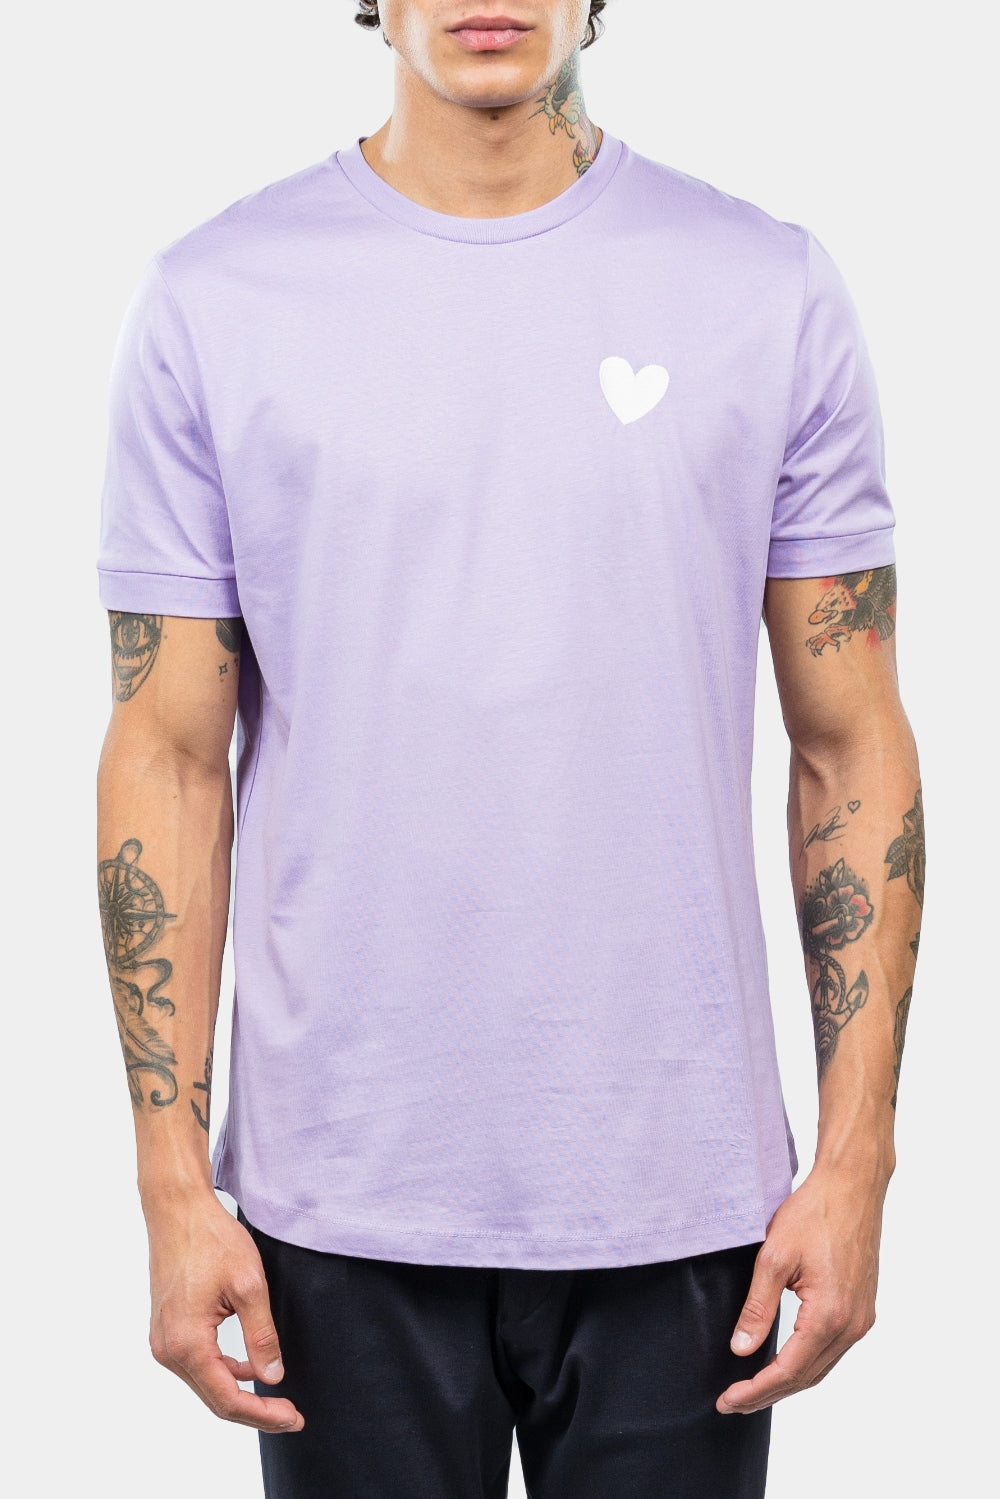 INIMIGO T-shirt Coeur Contrasté